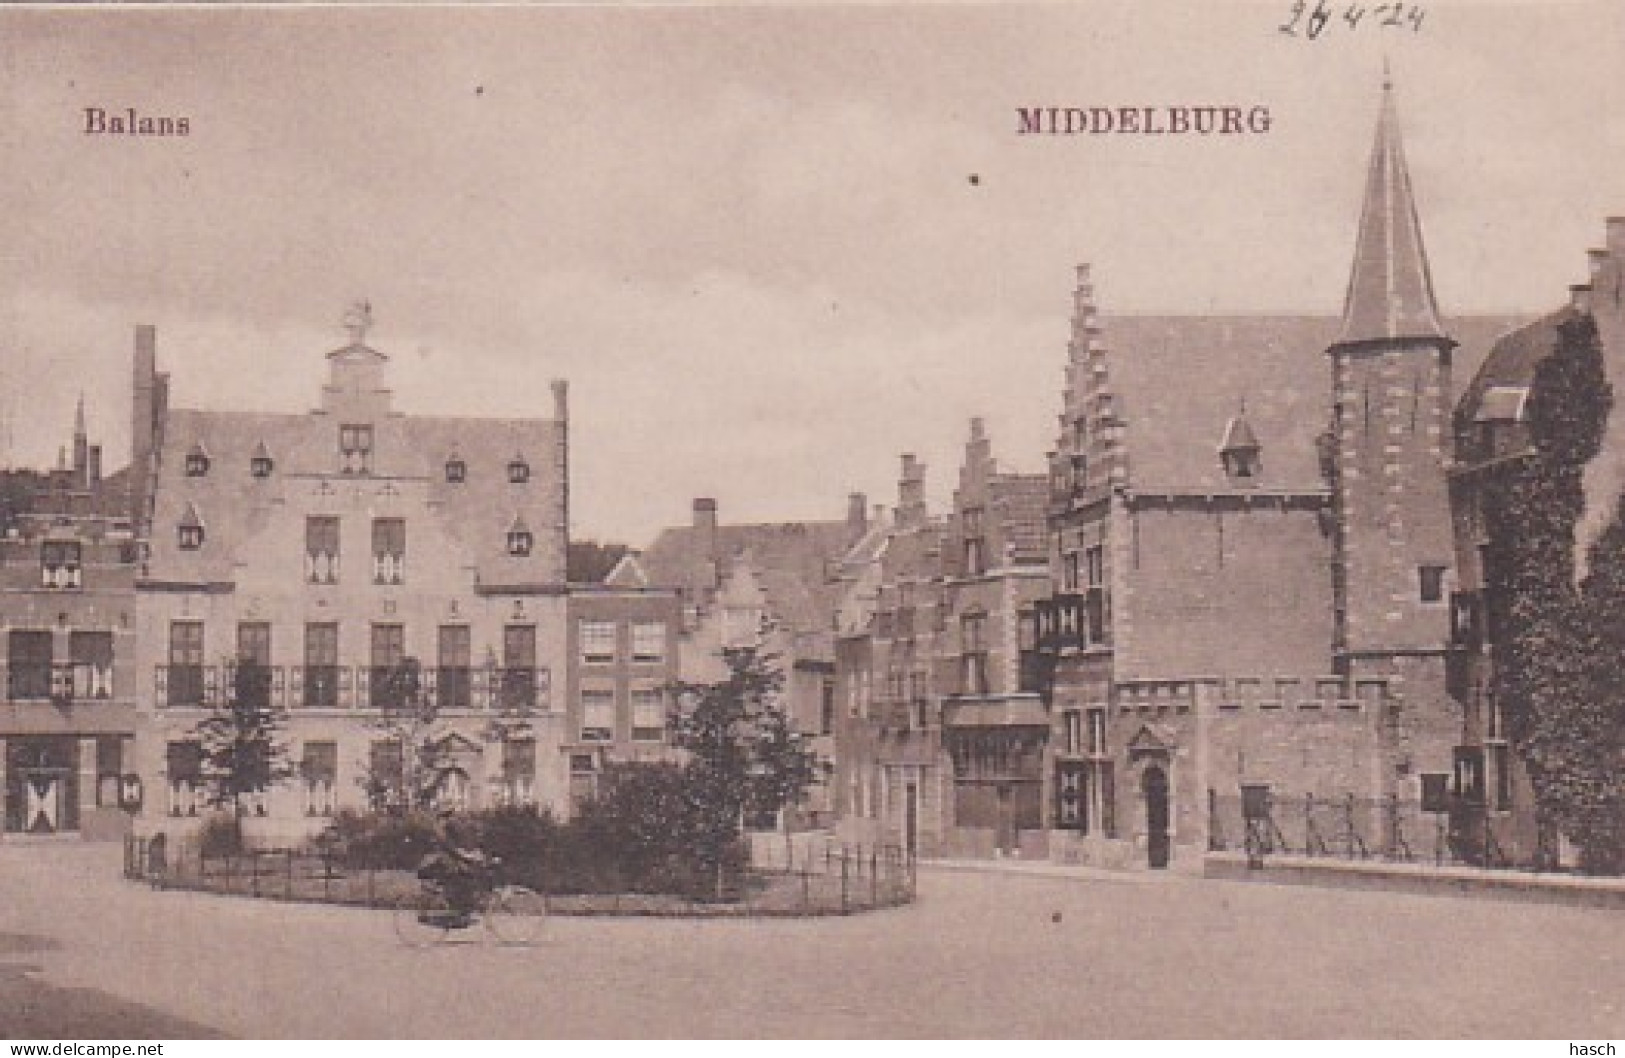 485510Middelburg, Balans 1924.  - Middelburg